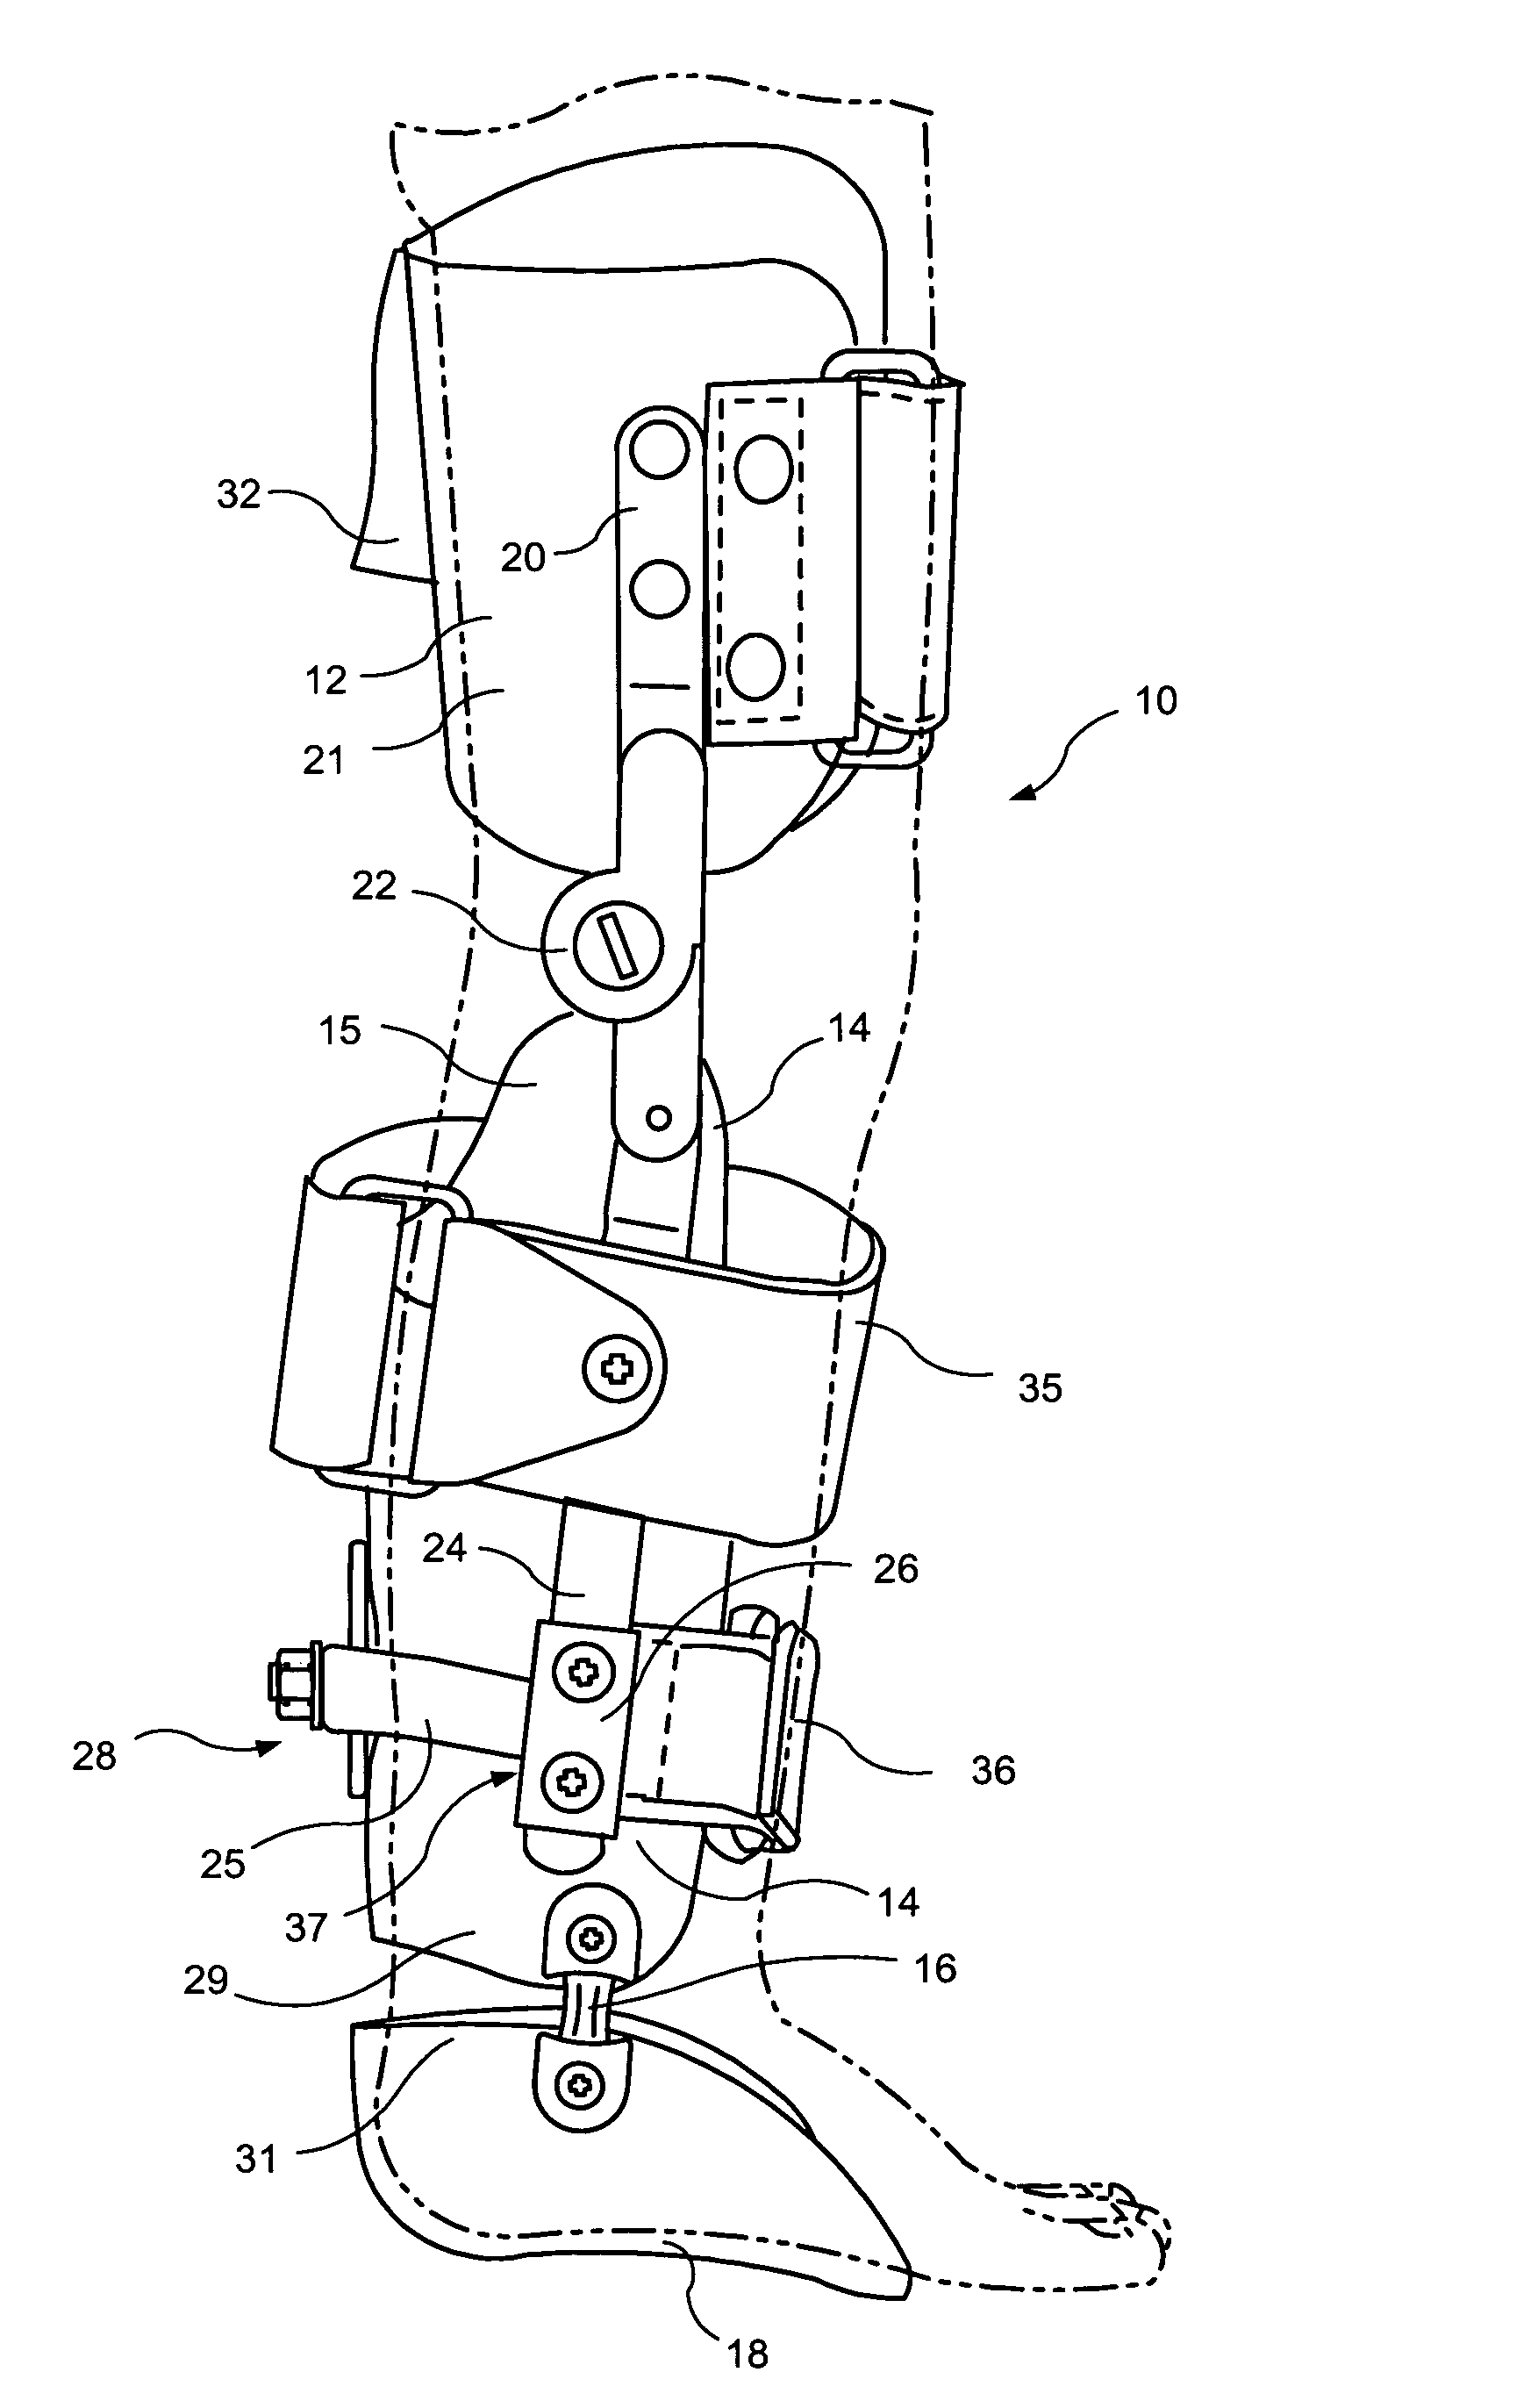 Apparatus for correction of leg deformities